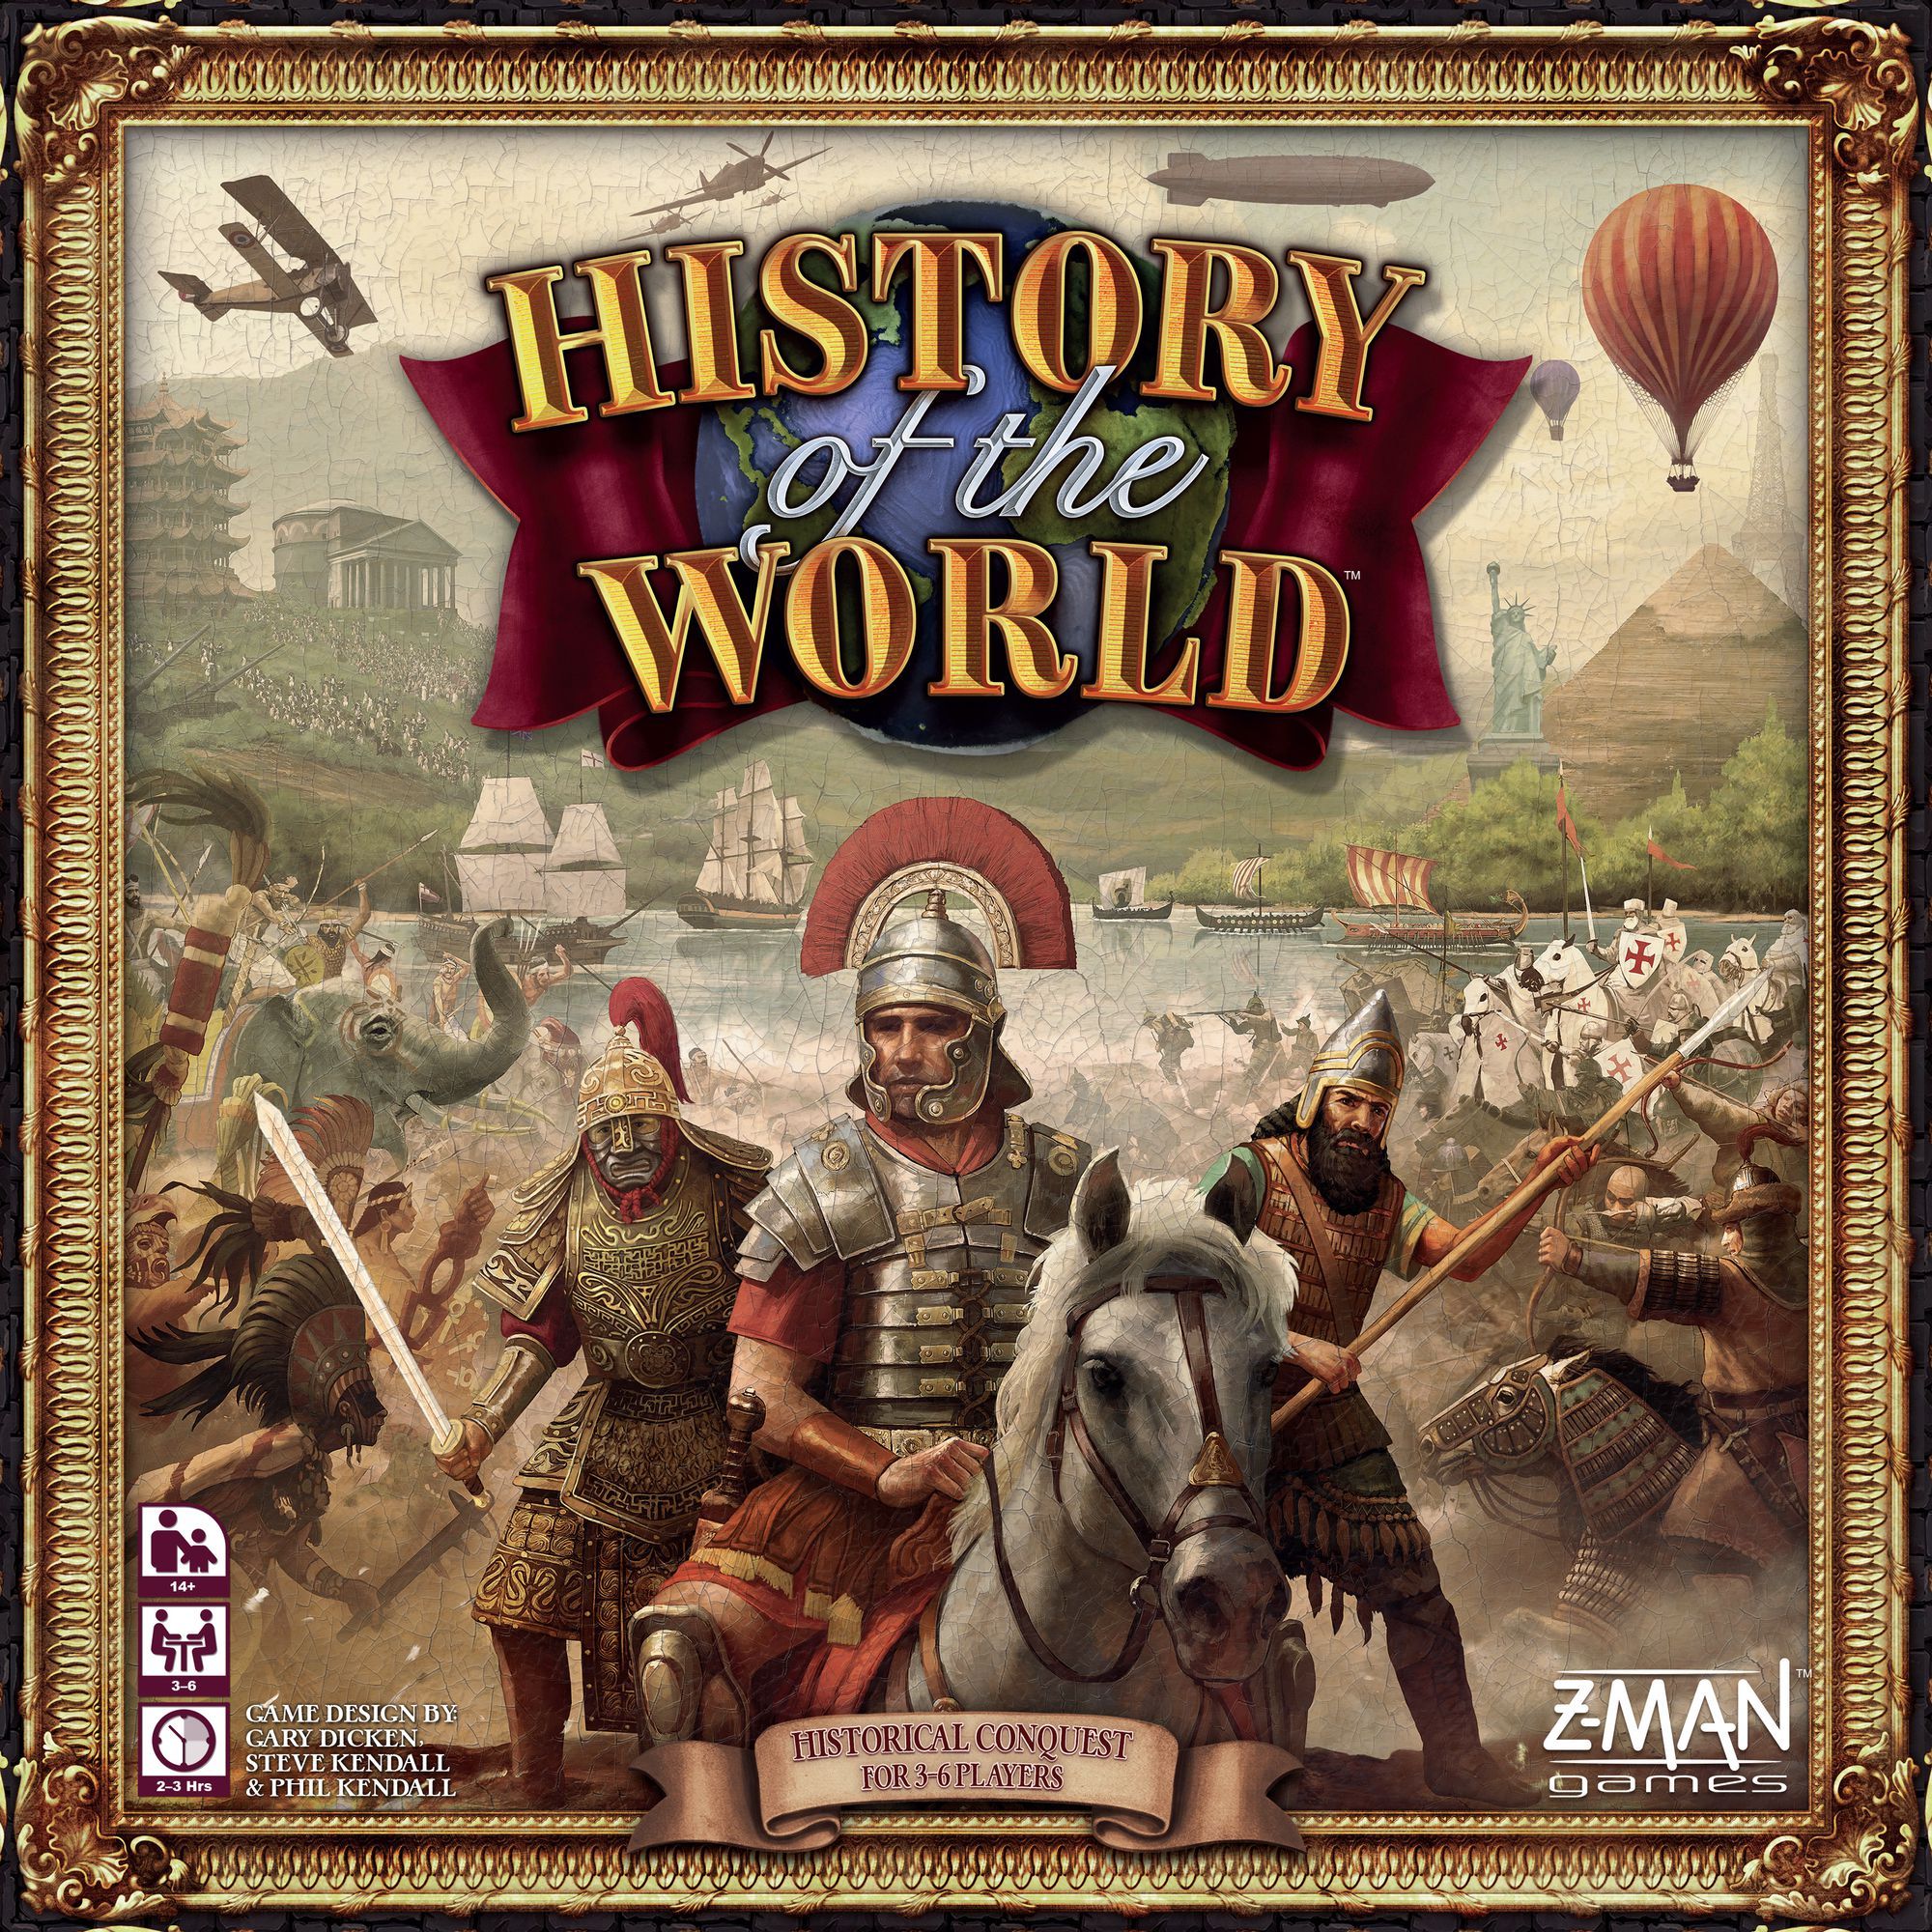 Открой историю игр. Исторические игры. History of the World игра. Историческая настольная игра карточная.